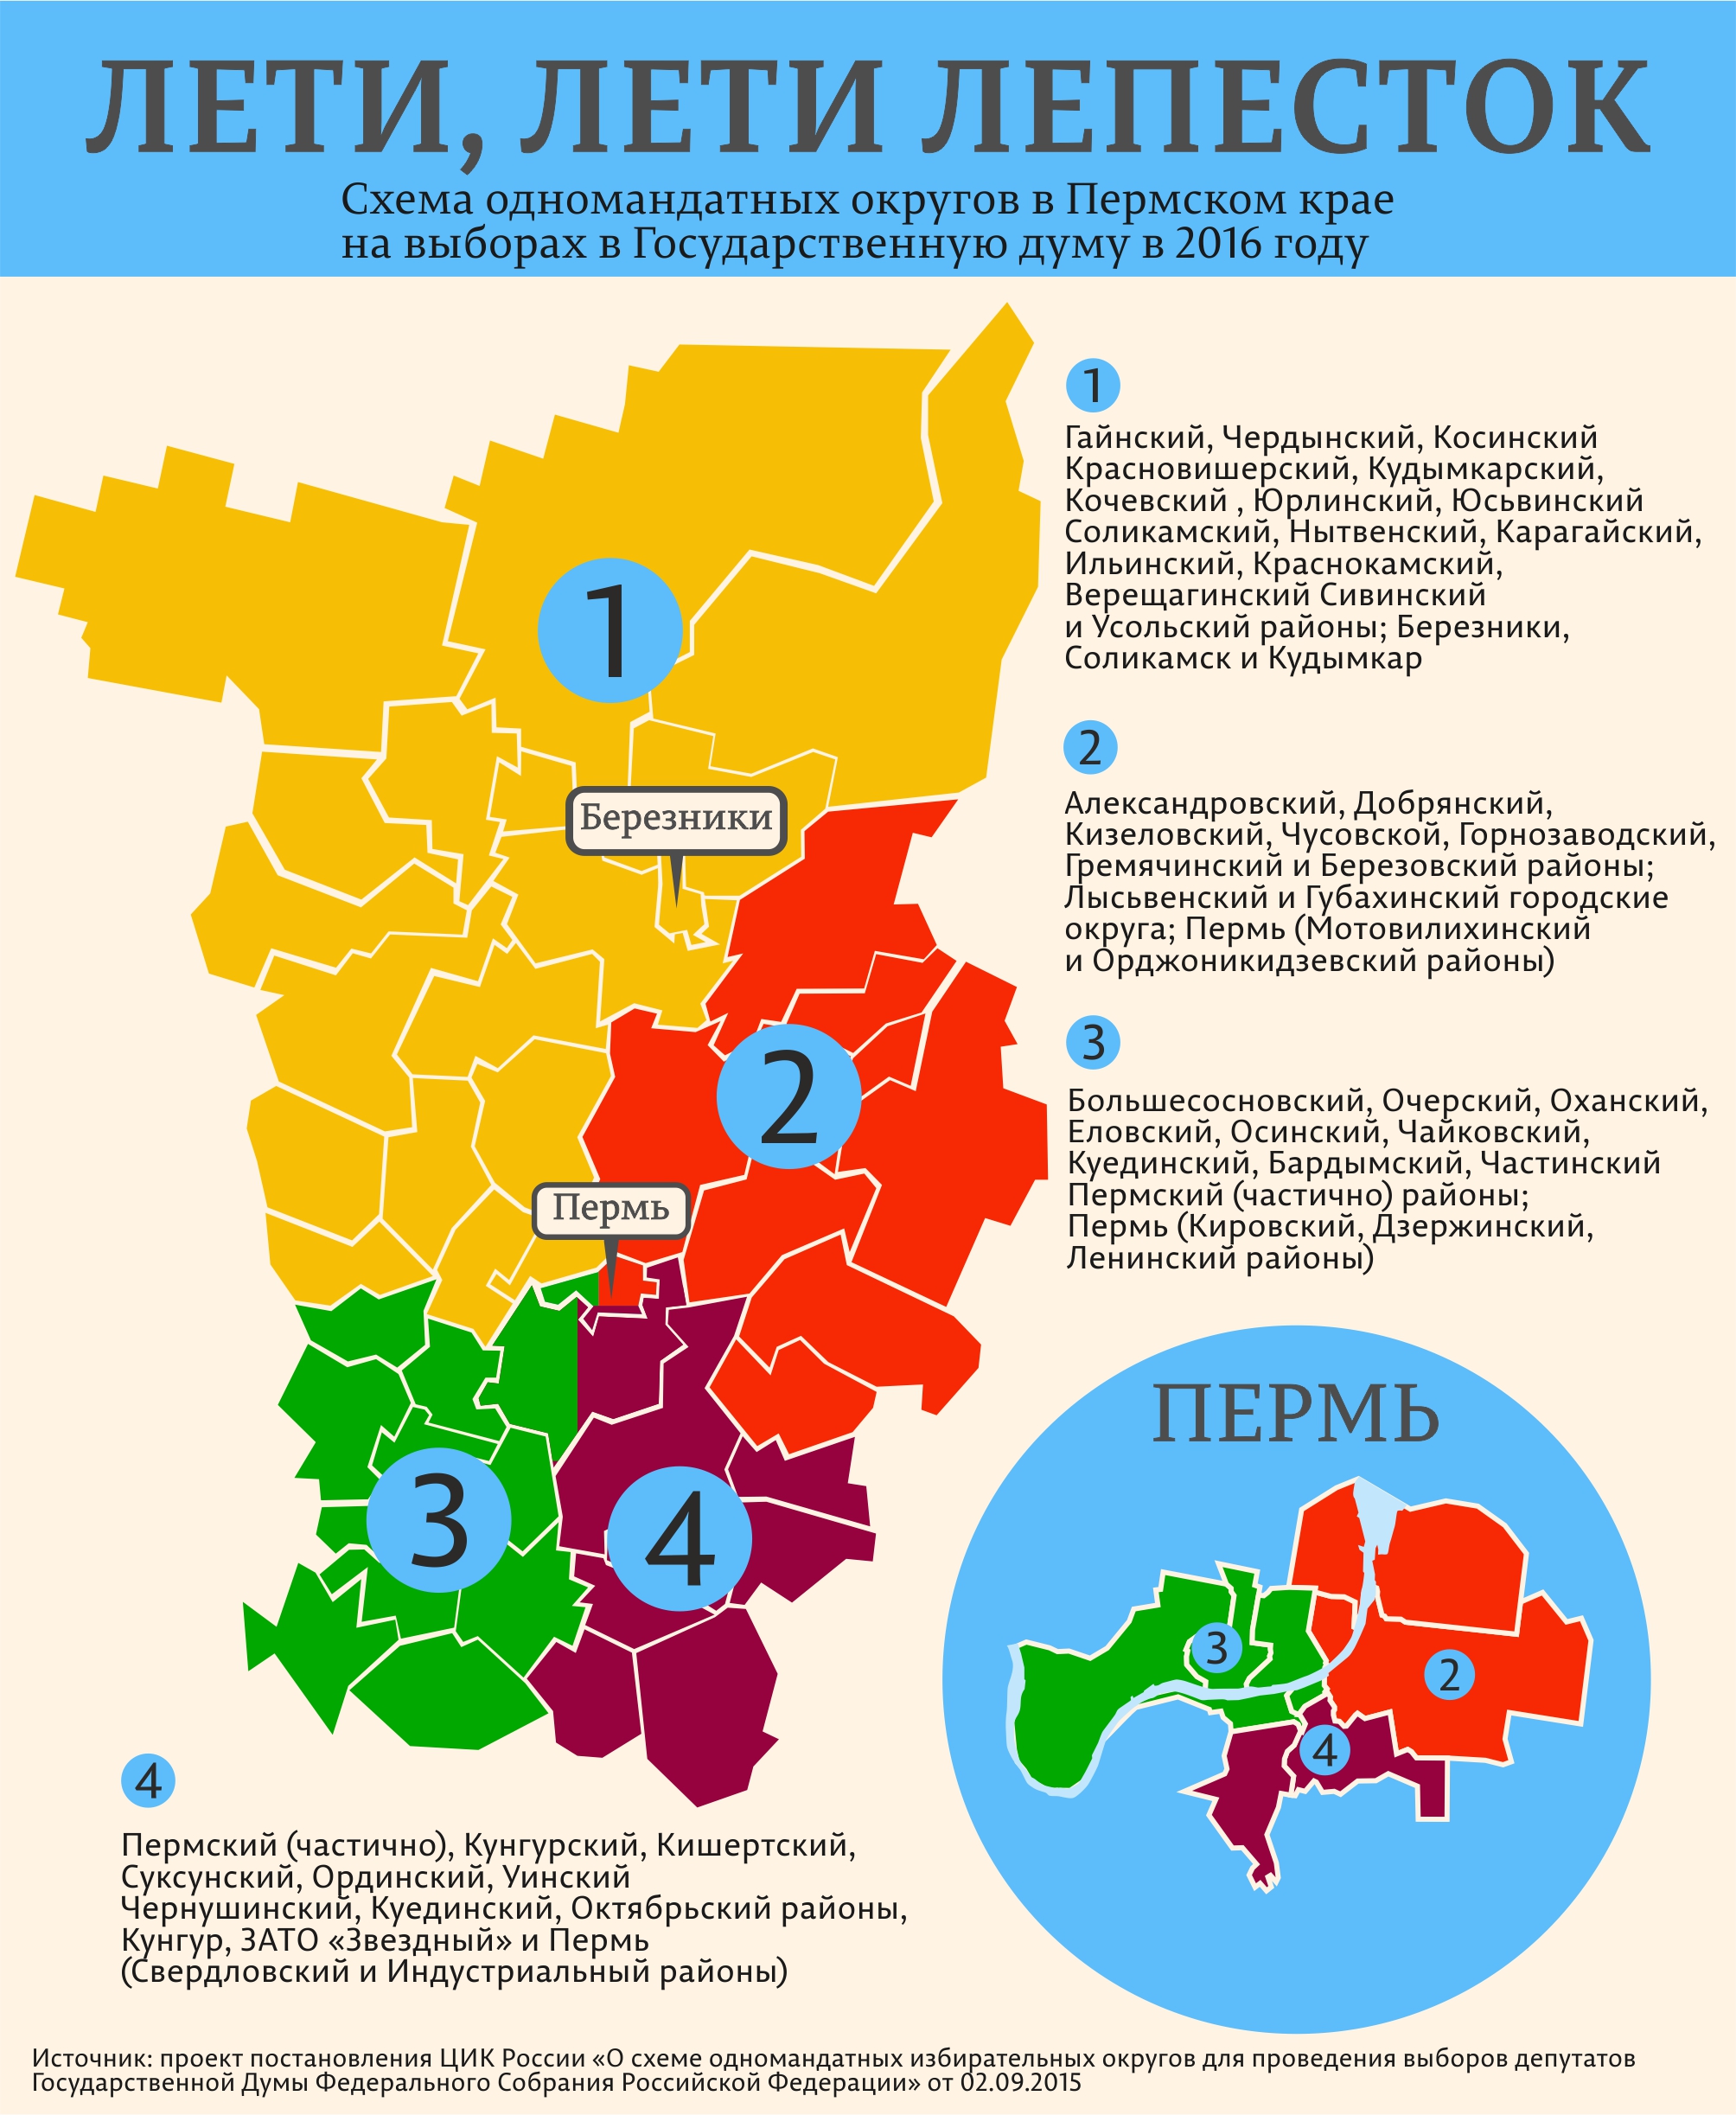 Три в Перми, один — на севере. Инфографика Business Class по нарезке избирательных округов на выборах в Госдуму